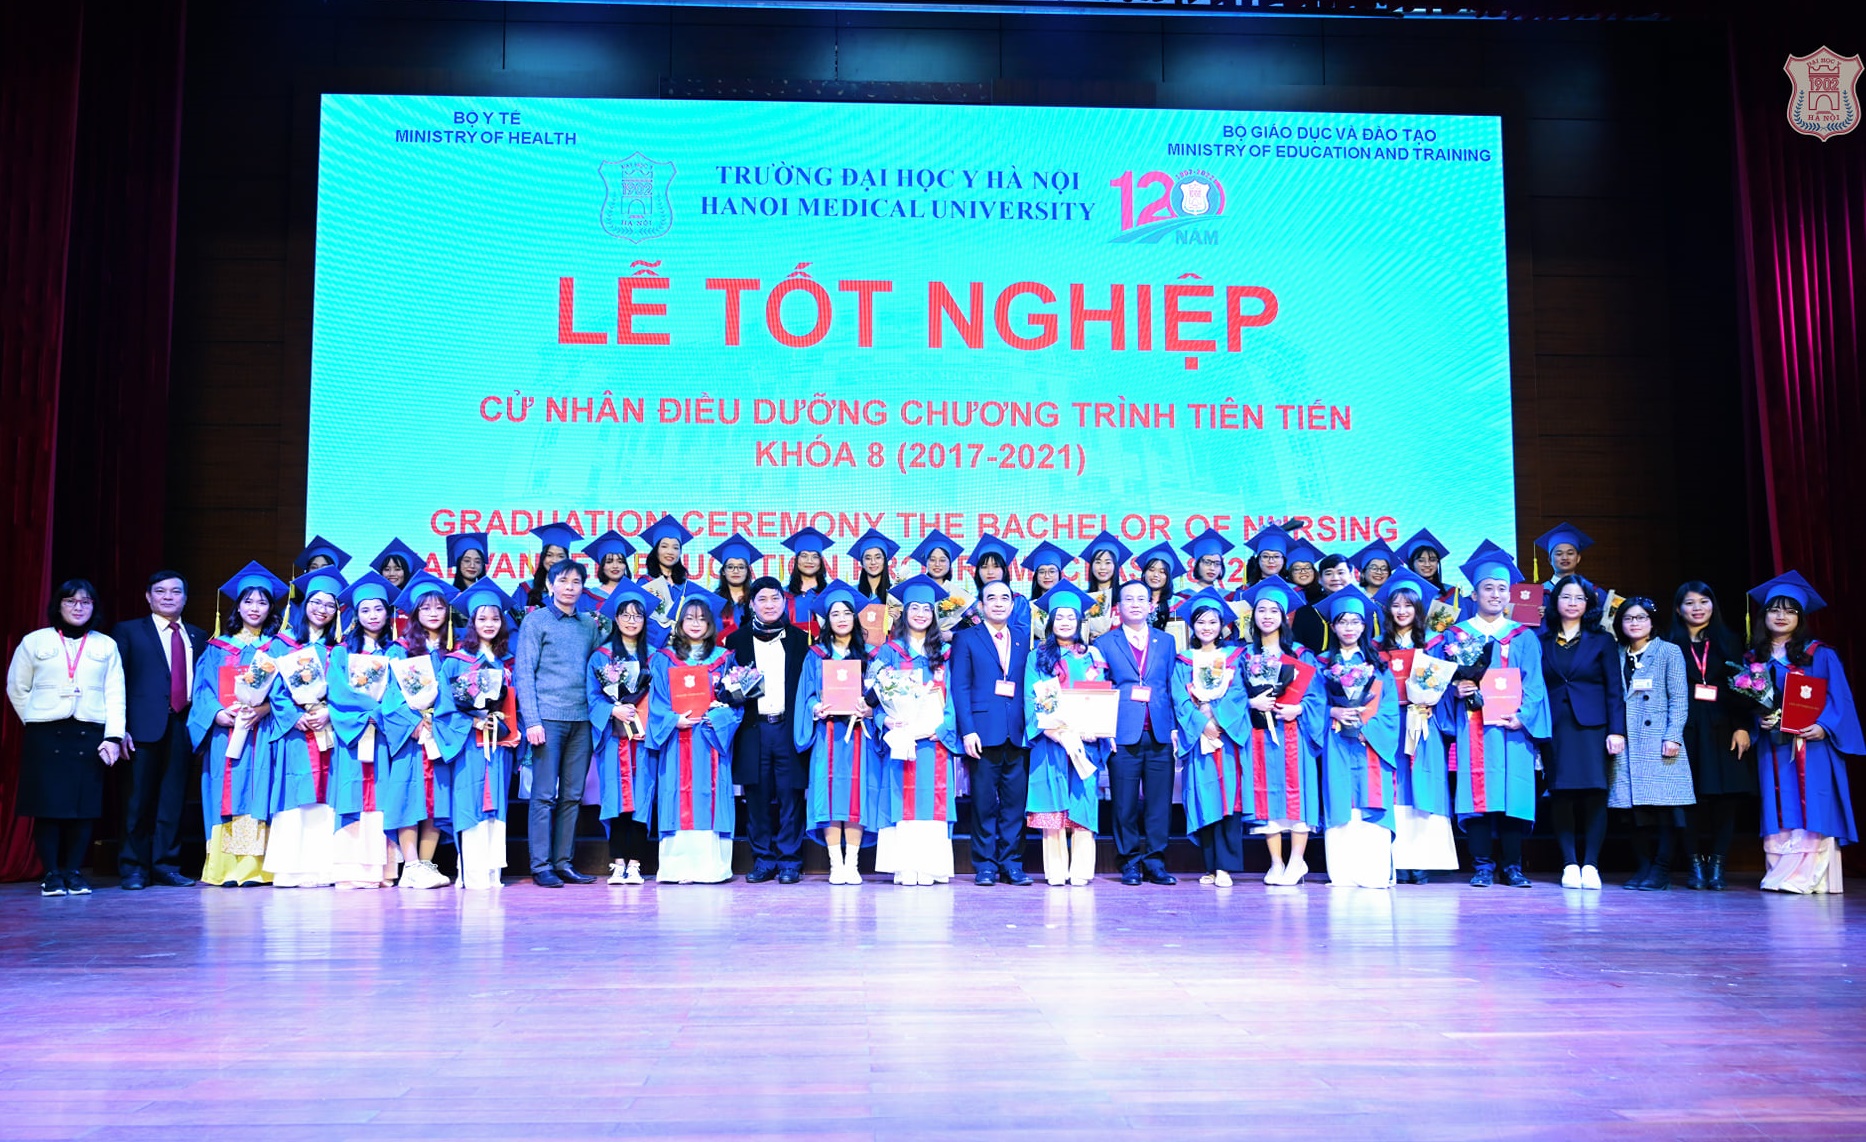 Những hình ảnh thực tế trong buổi lễ tốt nghiệp của trường Đại học y Hà Nội vừa qua.